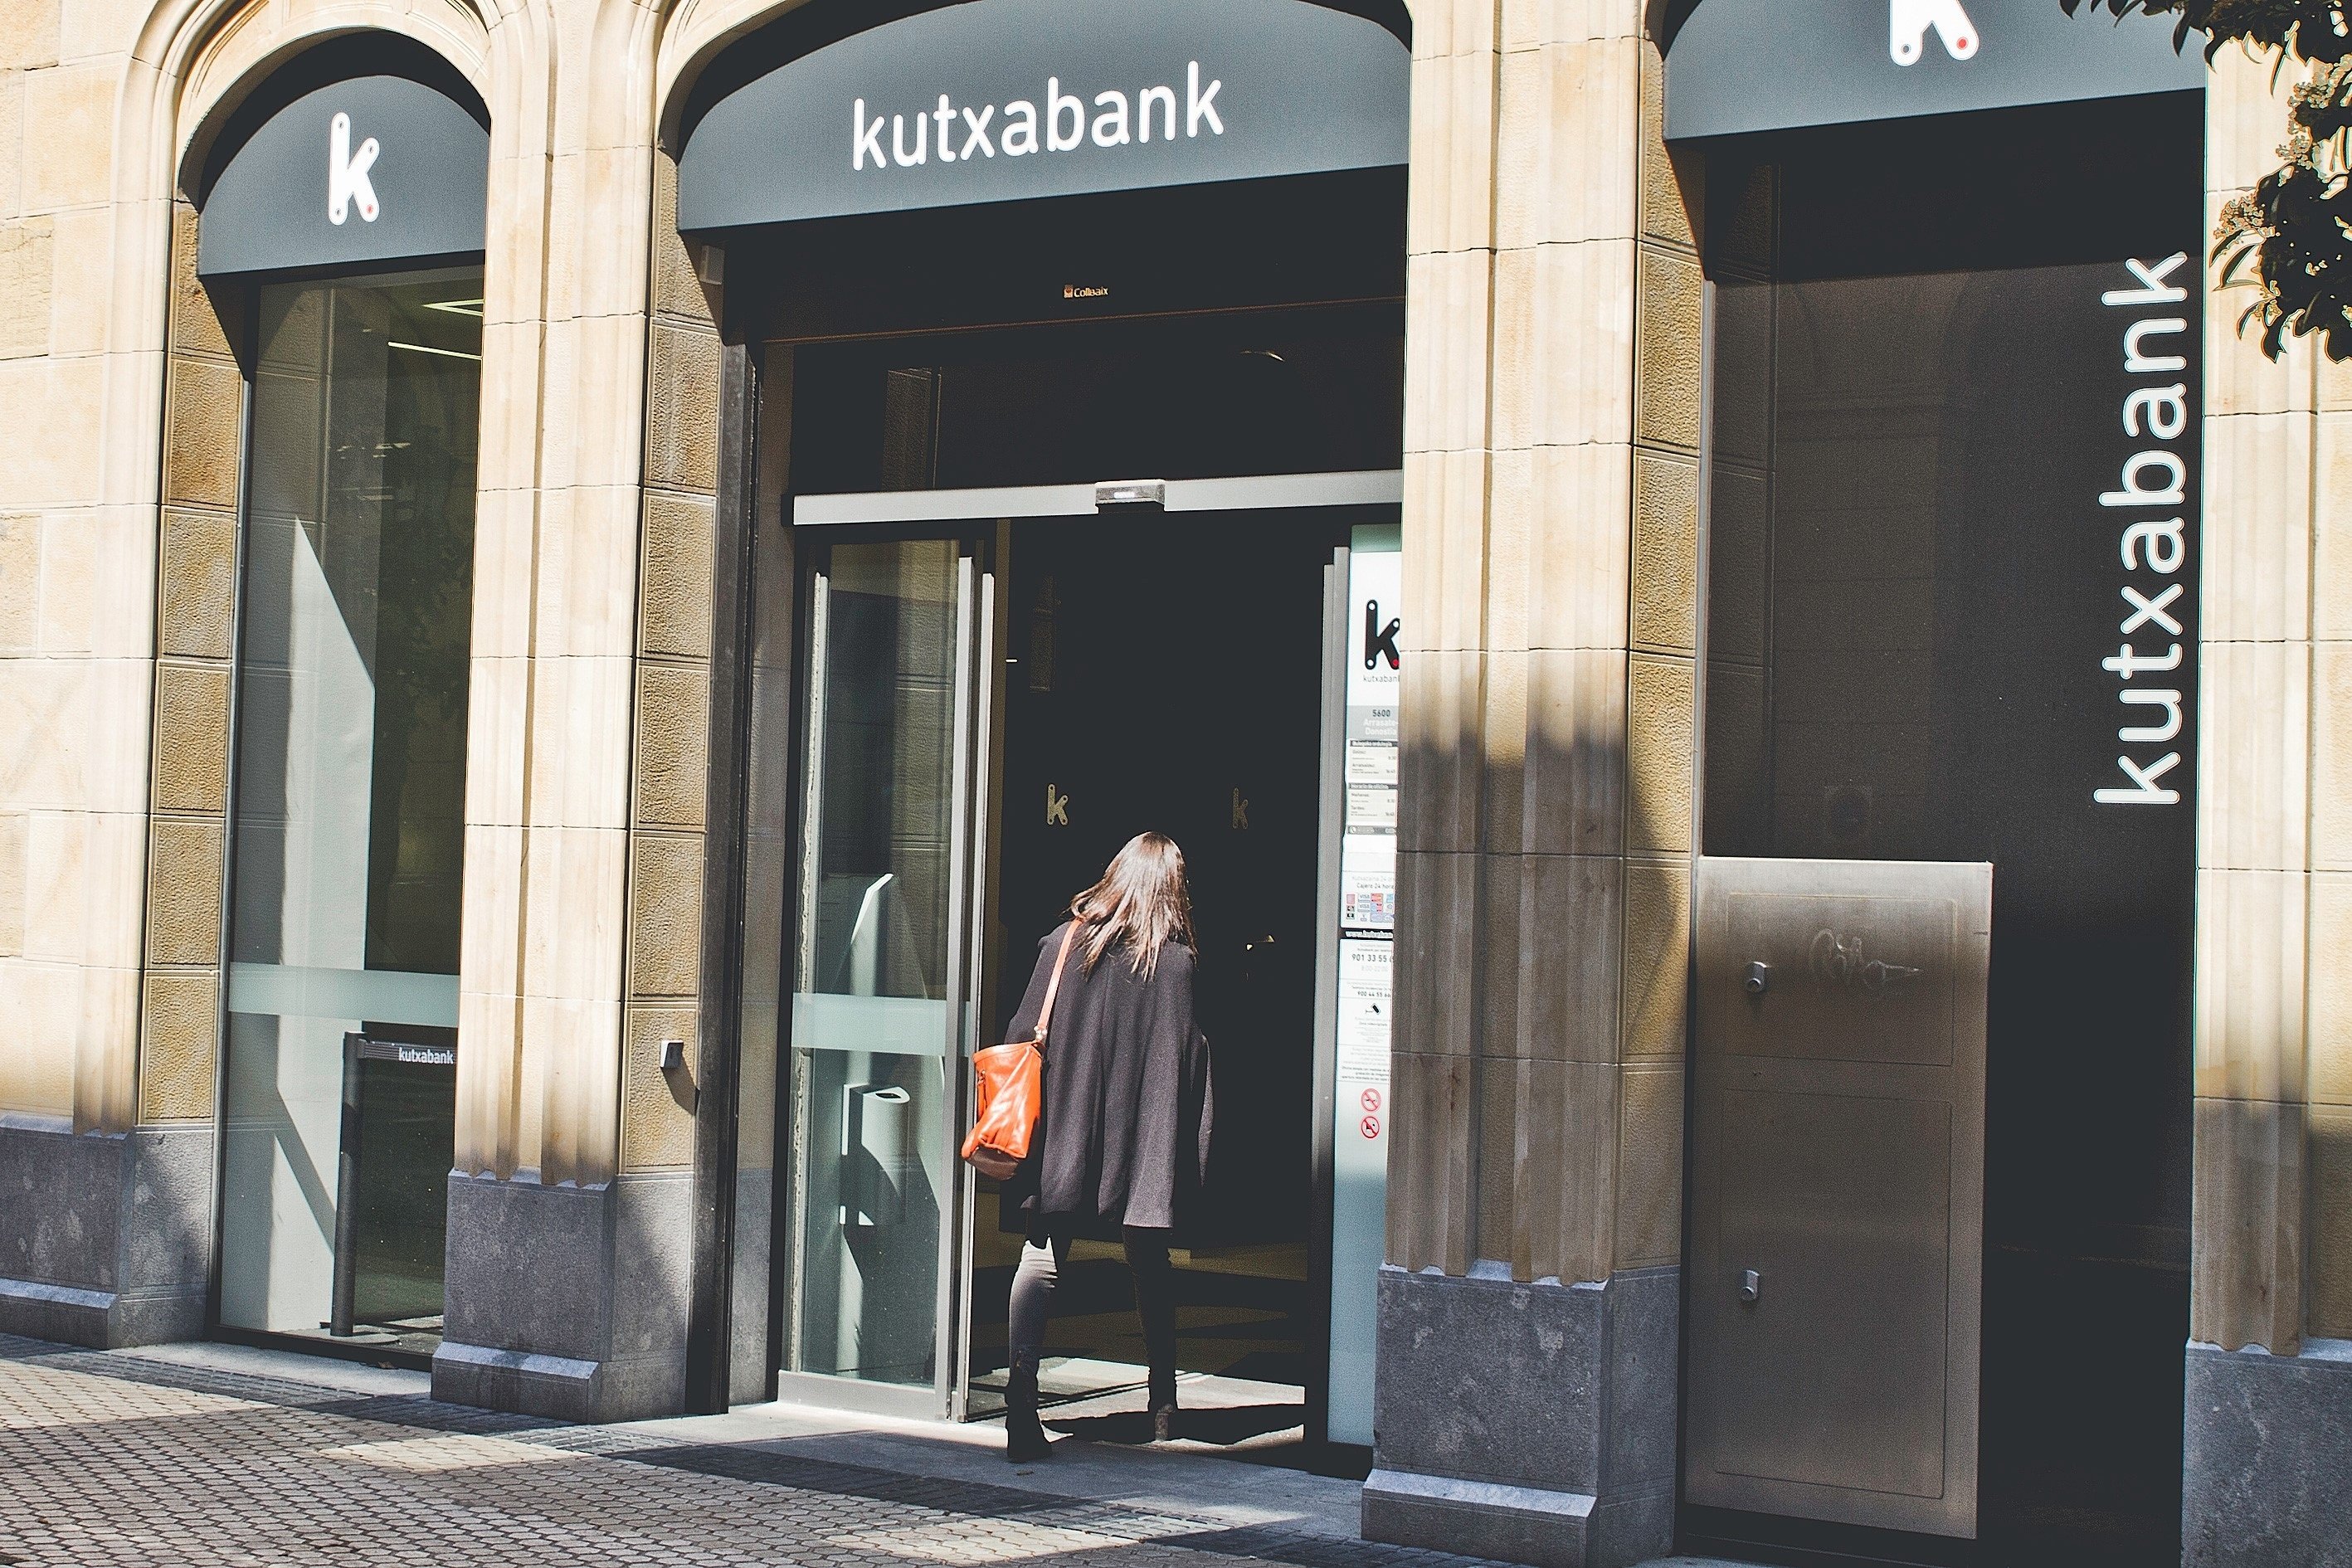 Kutxabank apuja el salari a la seva plantilla, la més jove superarà els 31.000 euros